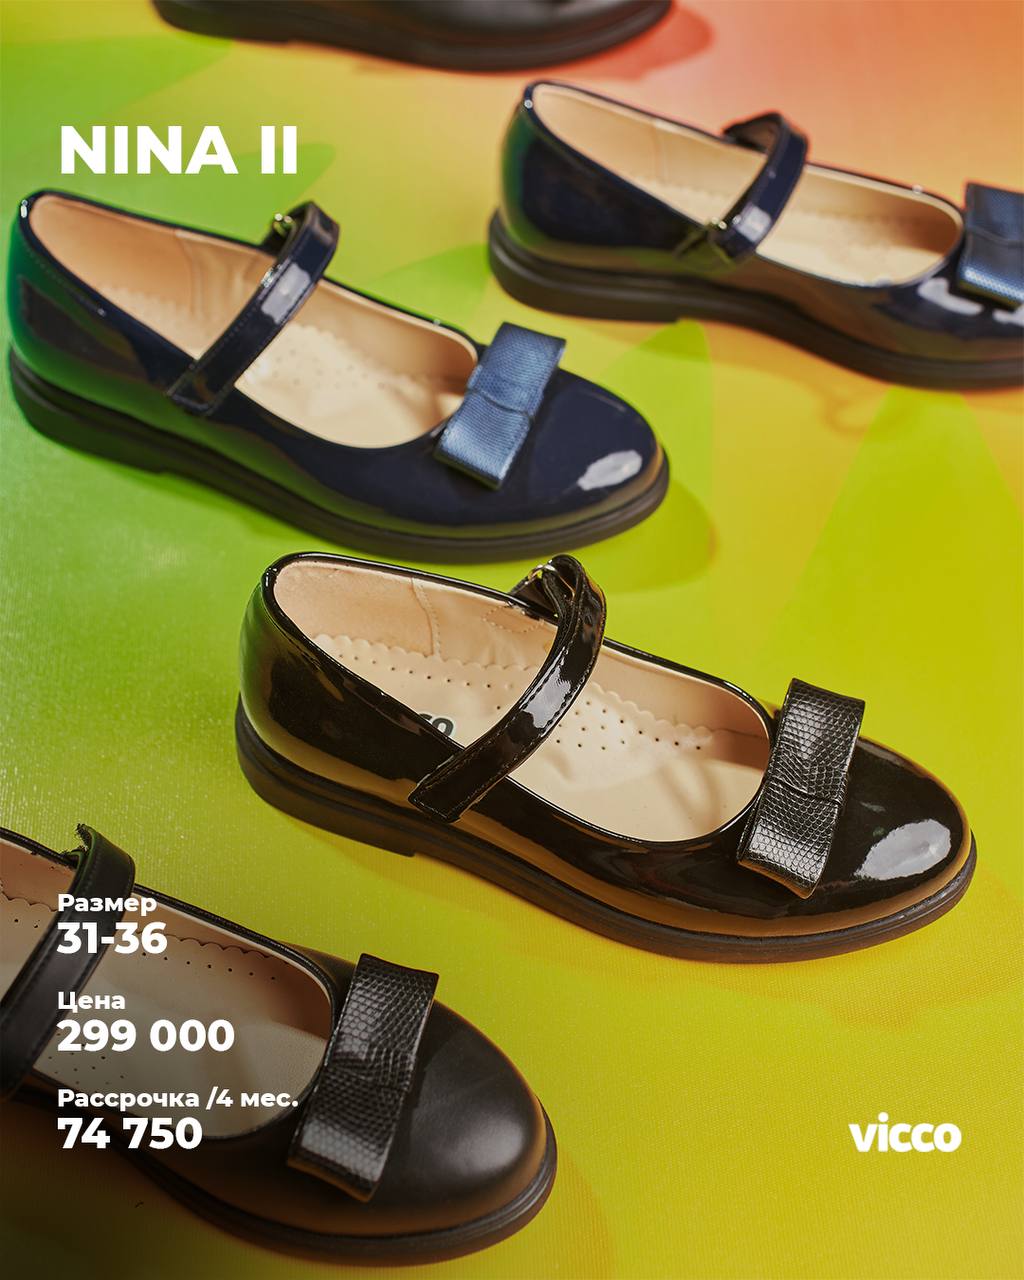 Купить школьную обувь - Коллекция Nina